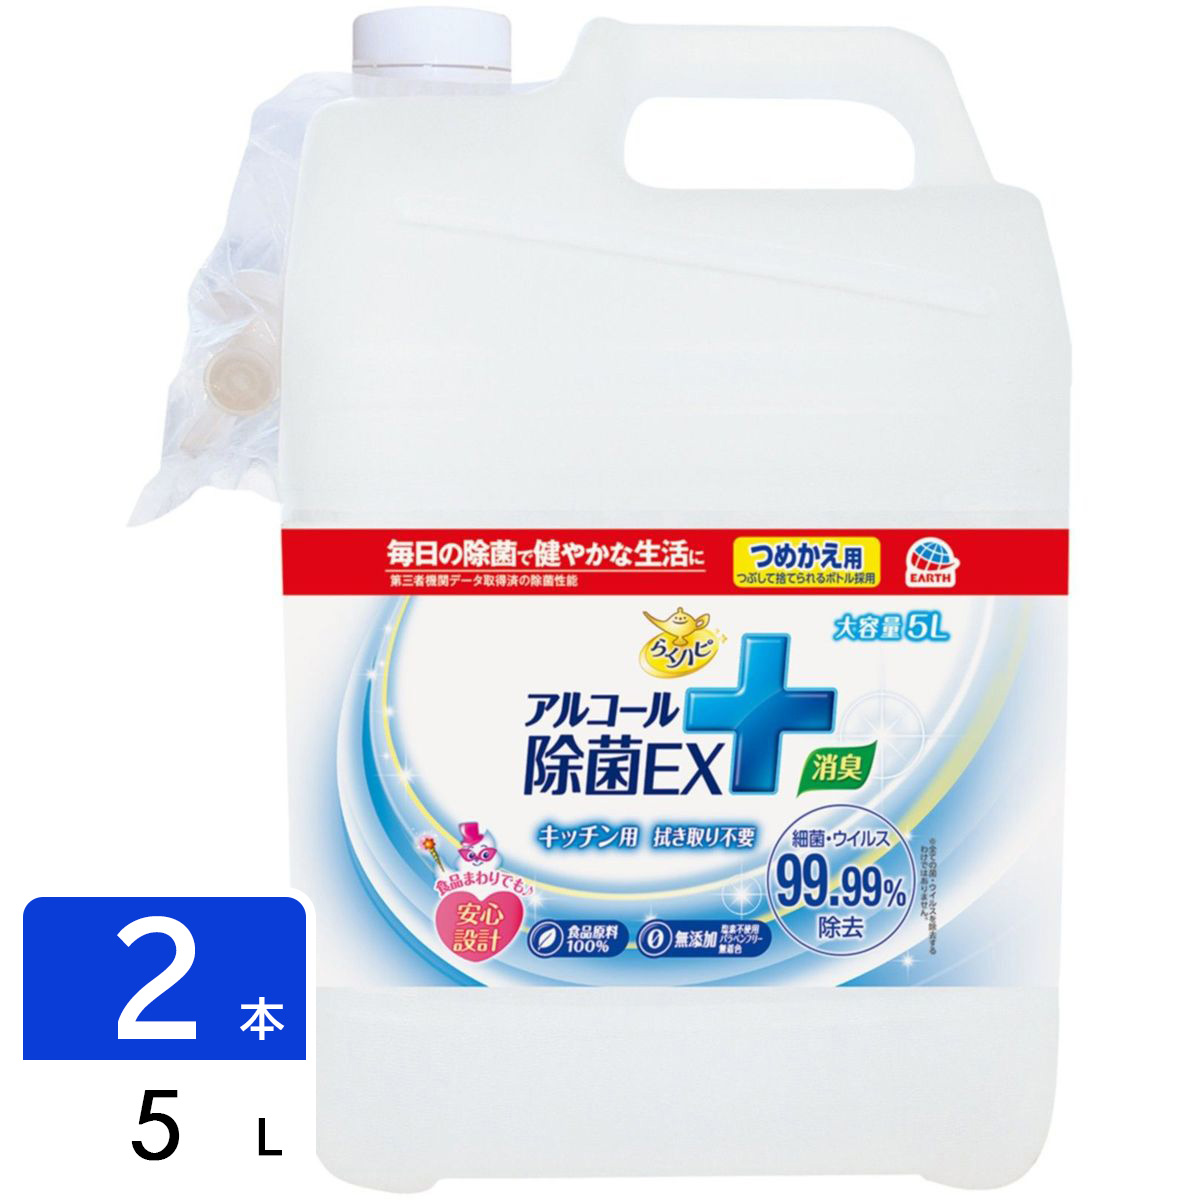 らくハピ アルコール除菌EX つめかえ 大容量 住居用洗剤 5L 2袋